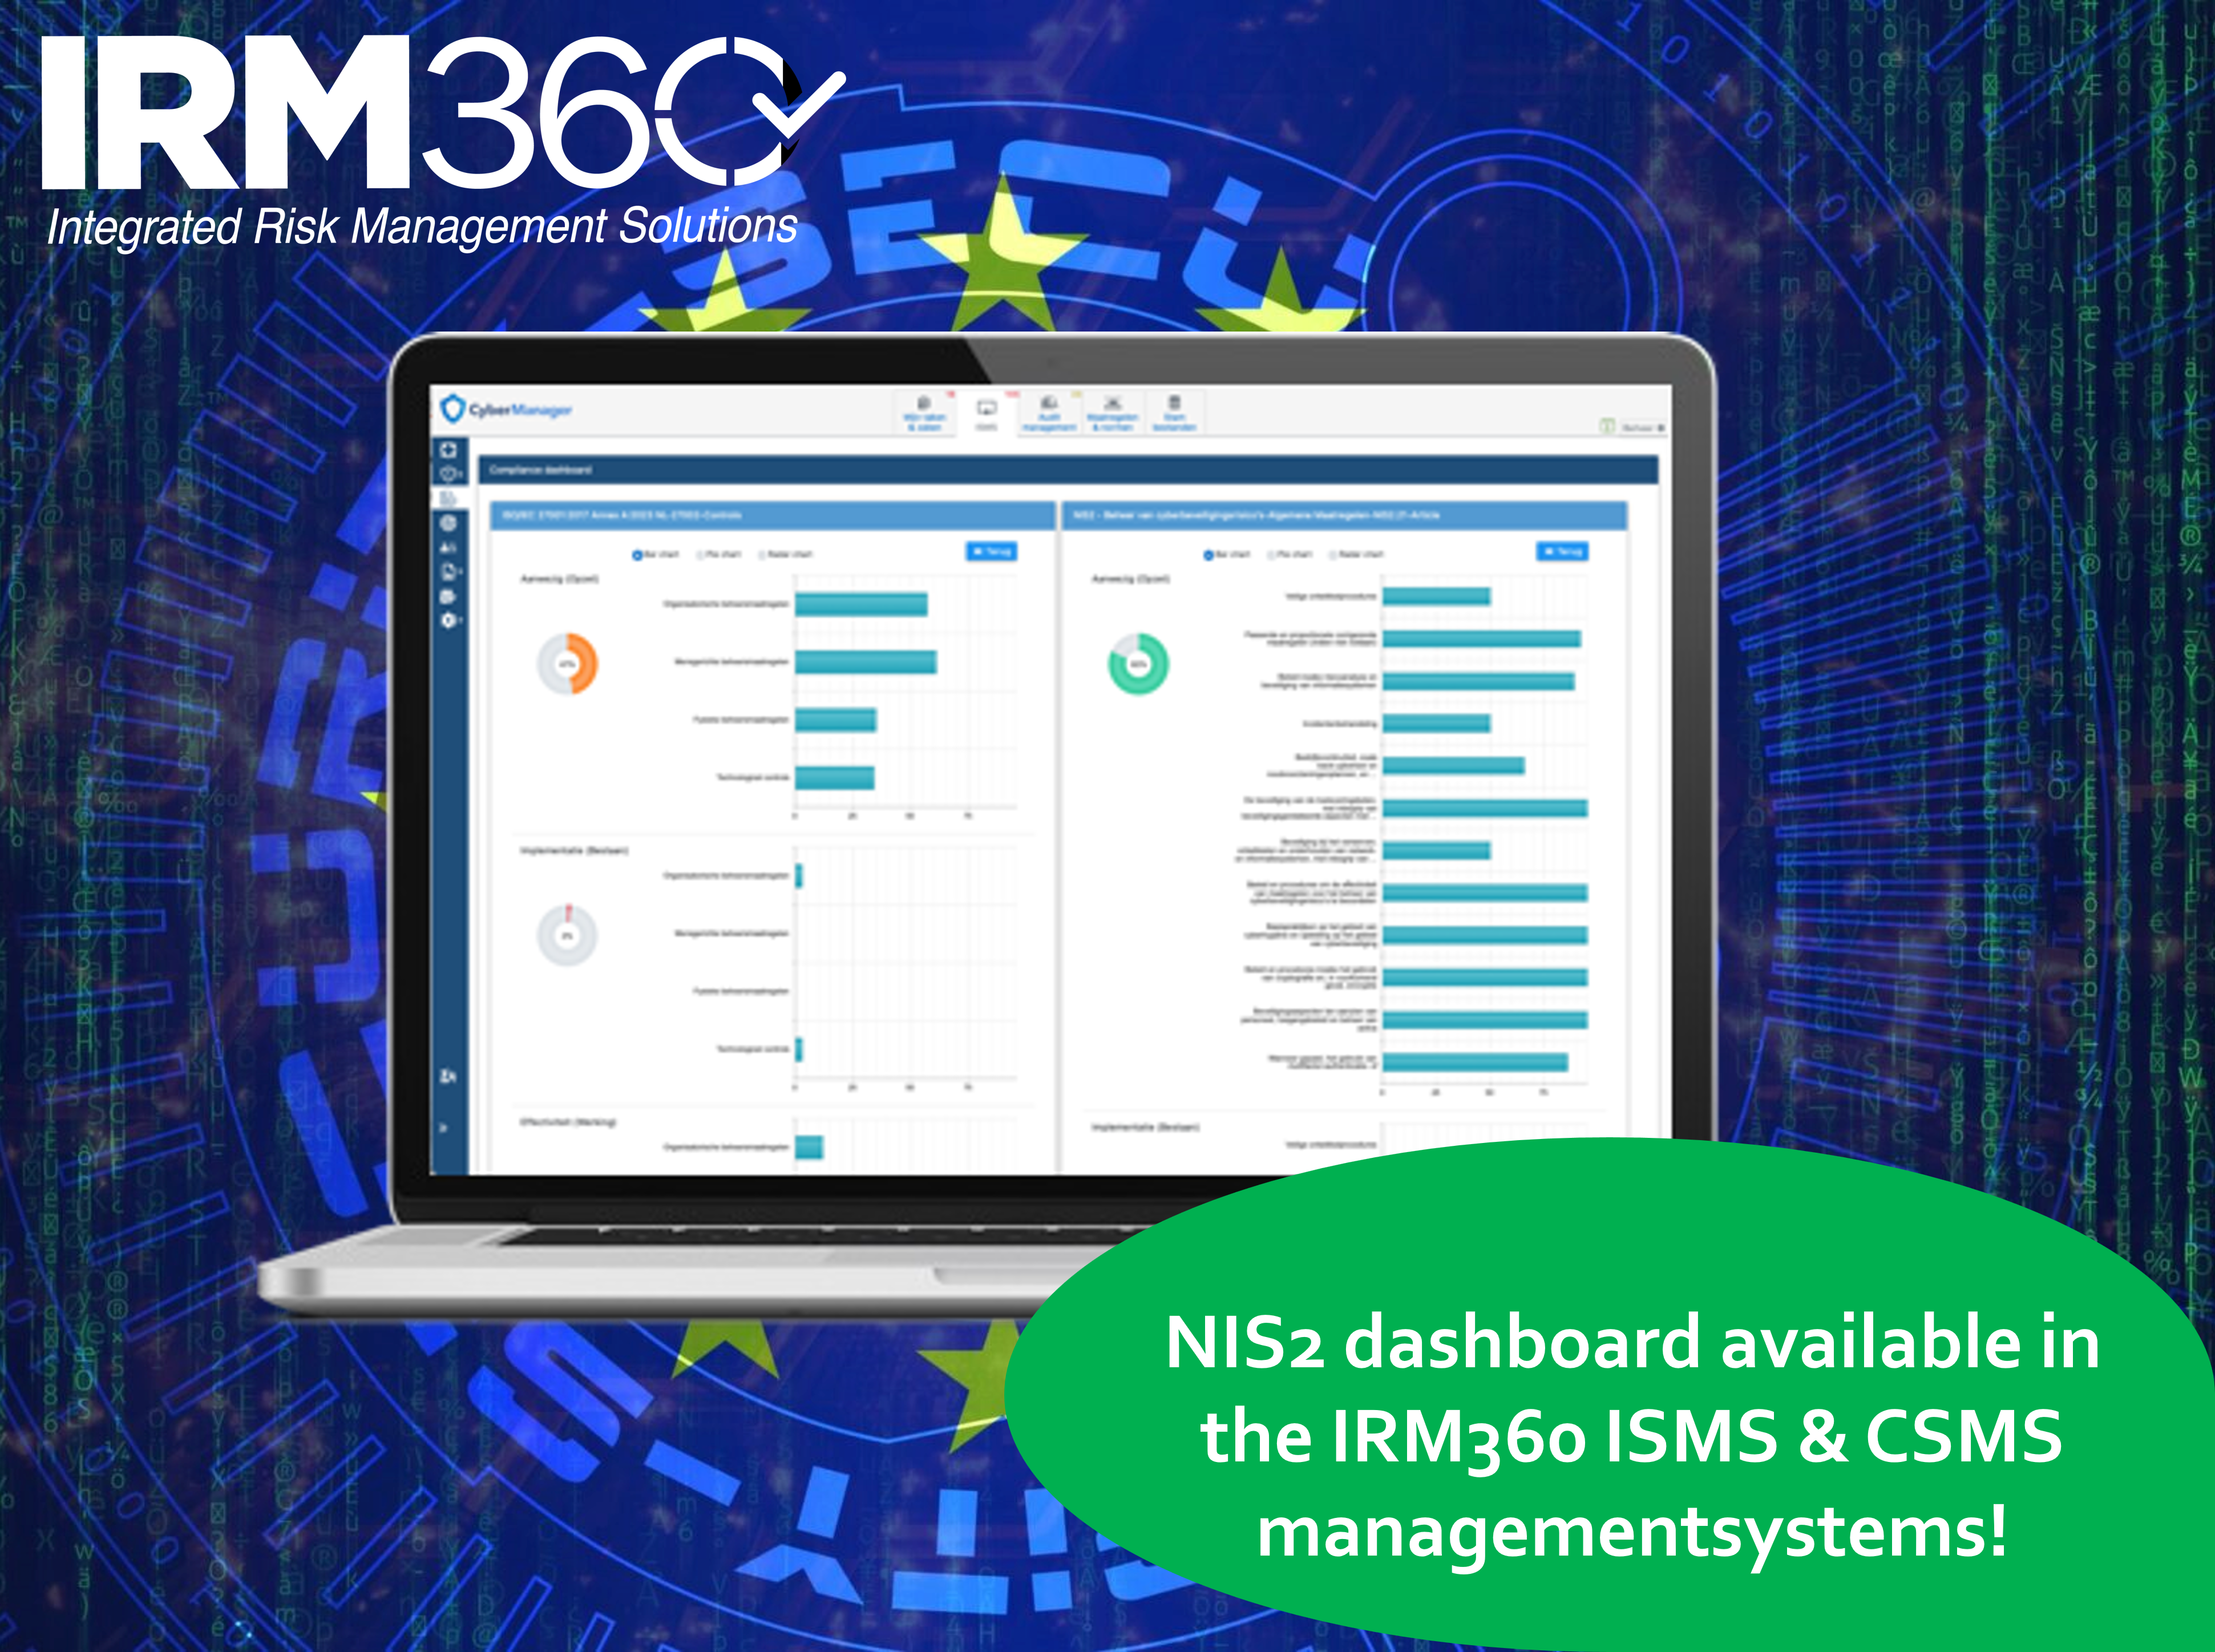 Tableaux de bord et mappages NIS2 disponibles dans le CyberManager IRM360 !